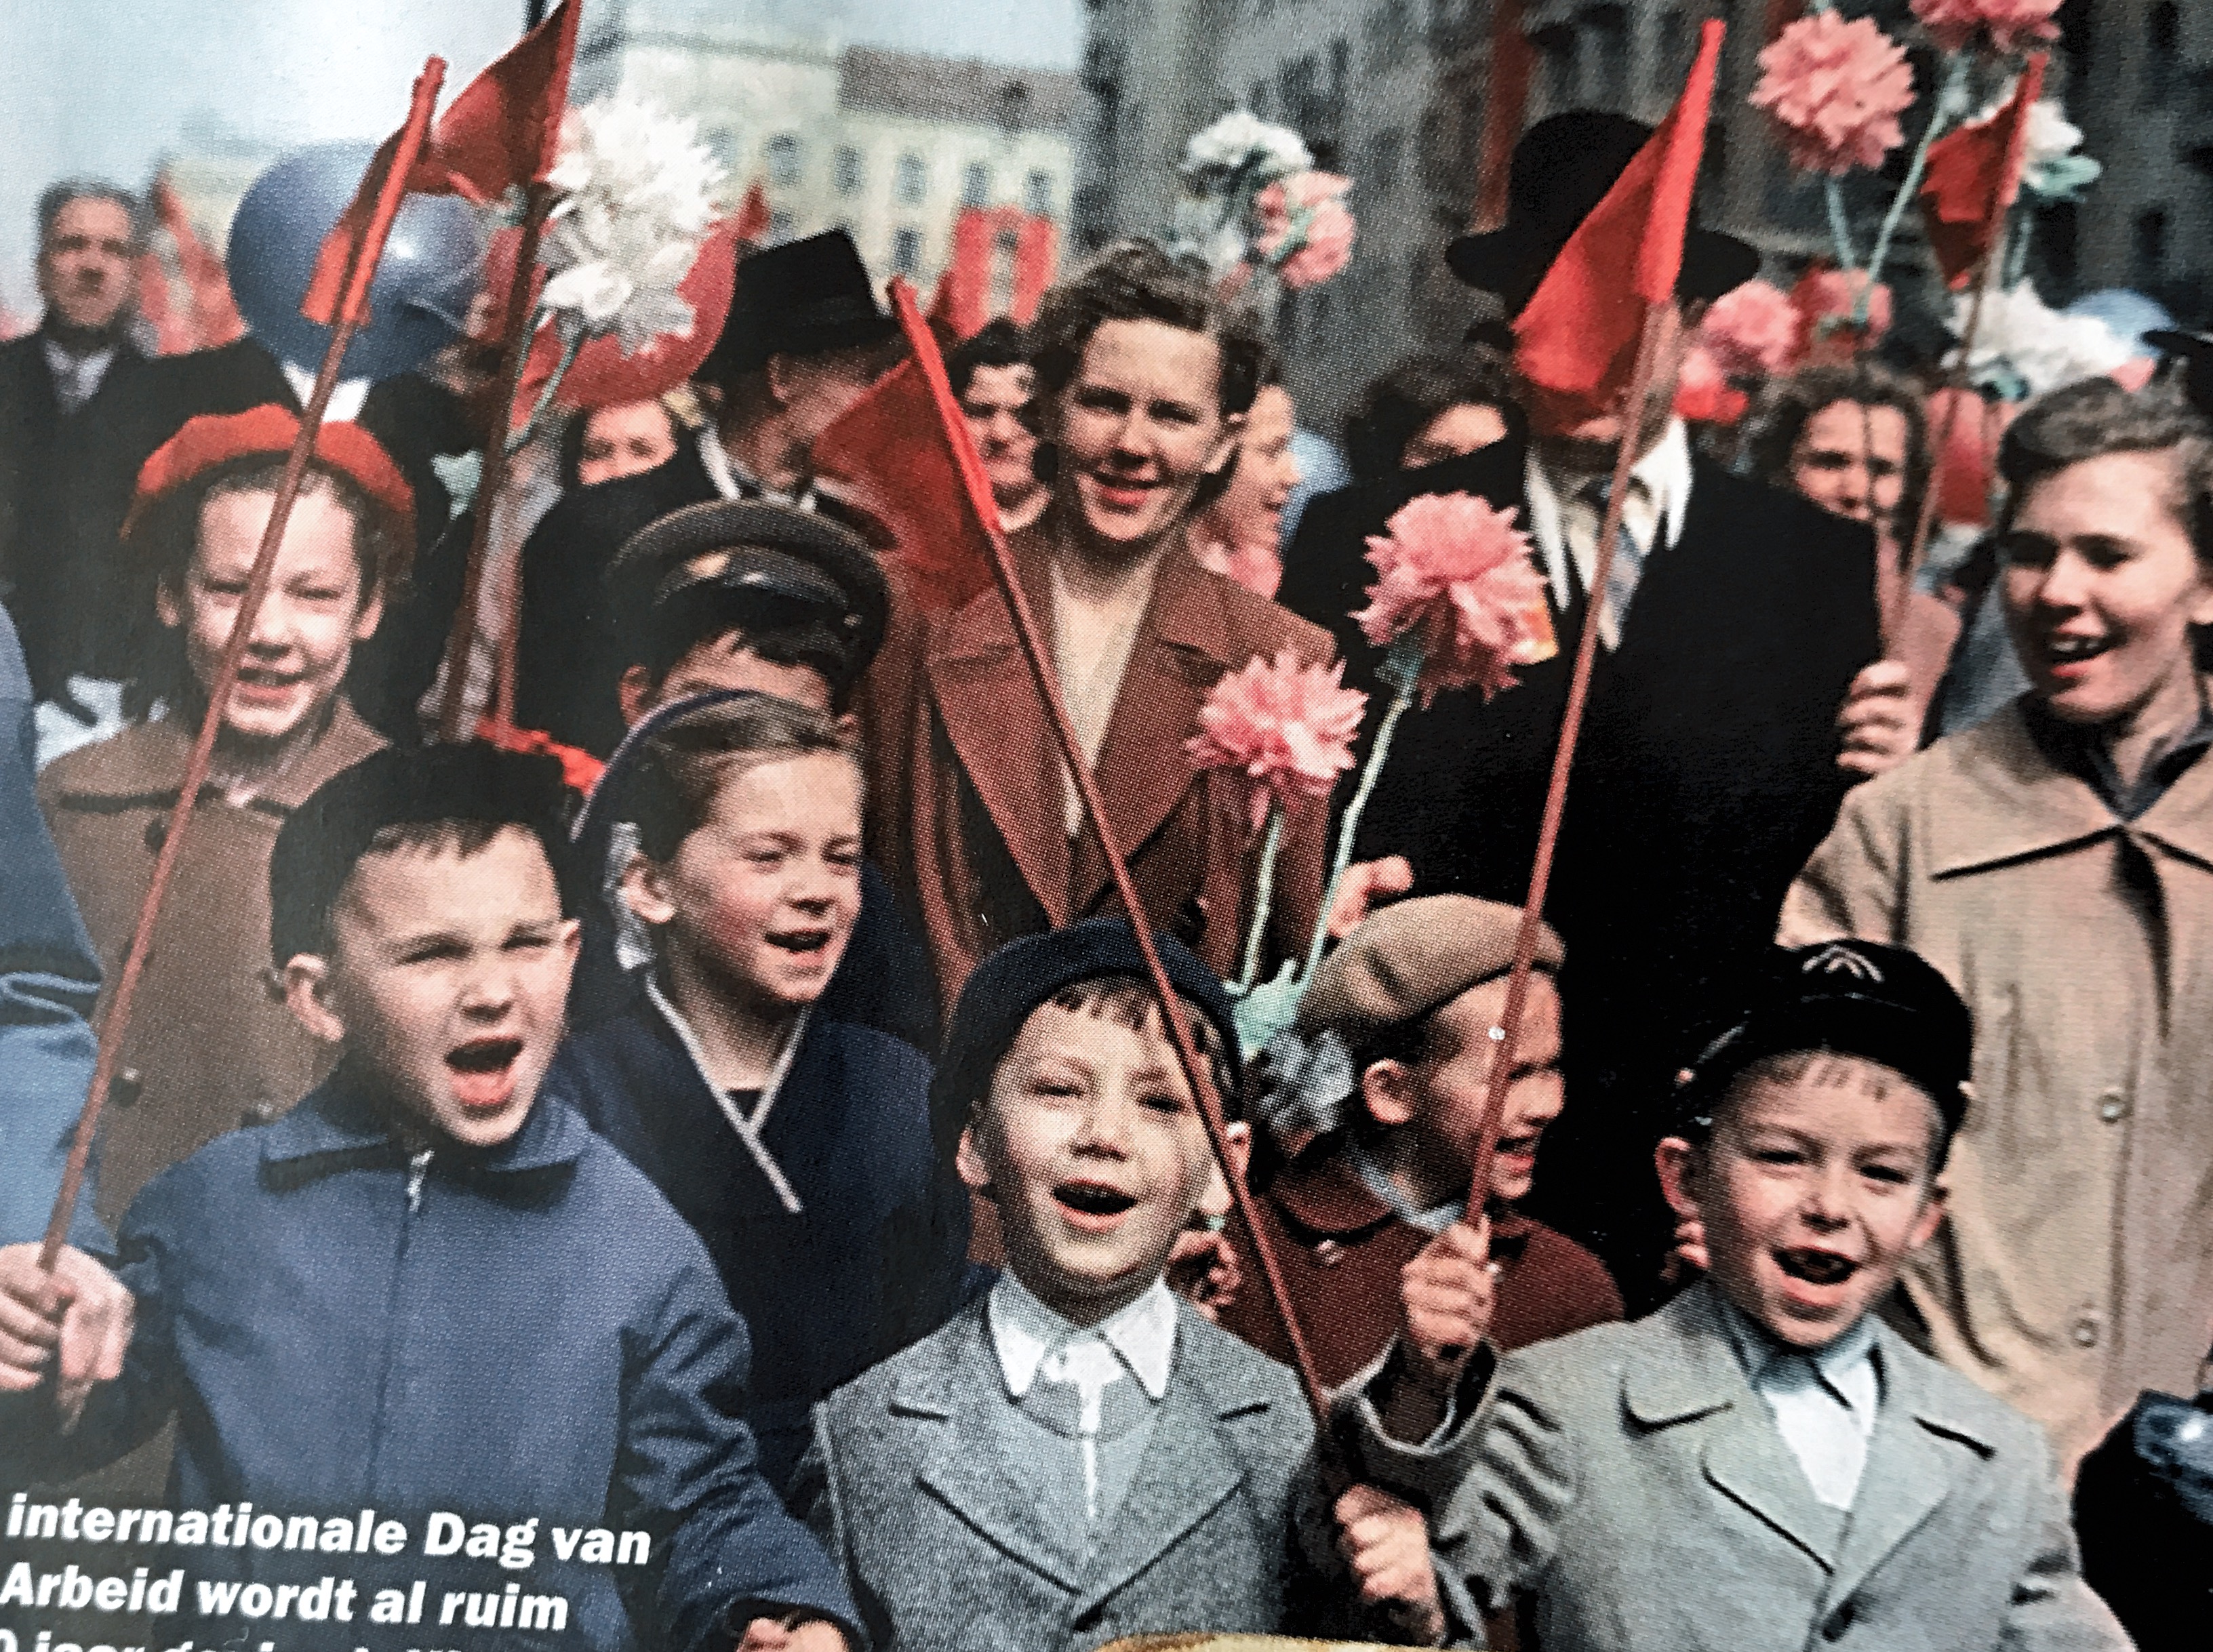 De 1 mei viering 1960 in Moskou. De jongen links is ongeveer 8 jaar. Foto stond in Historia. Die jongen lijkt wel heel erg op ……